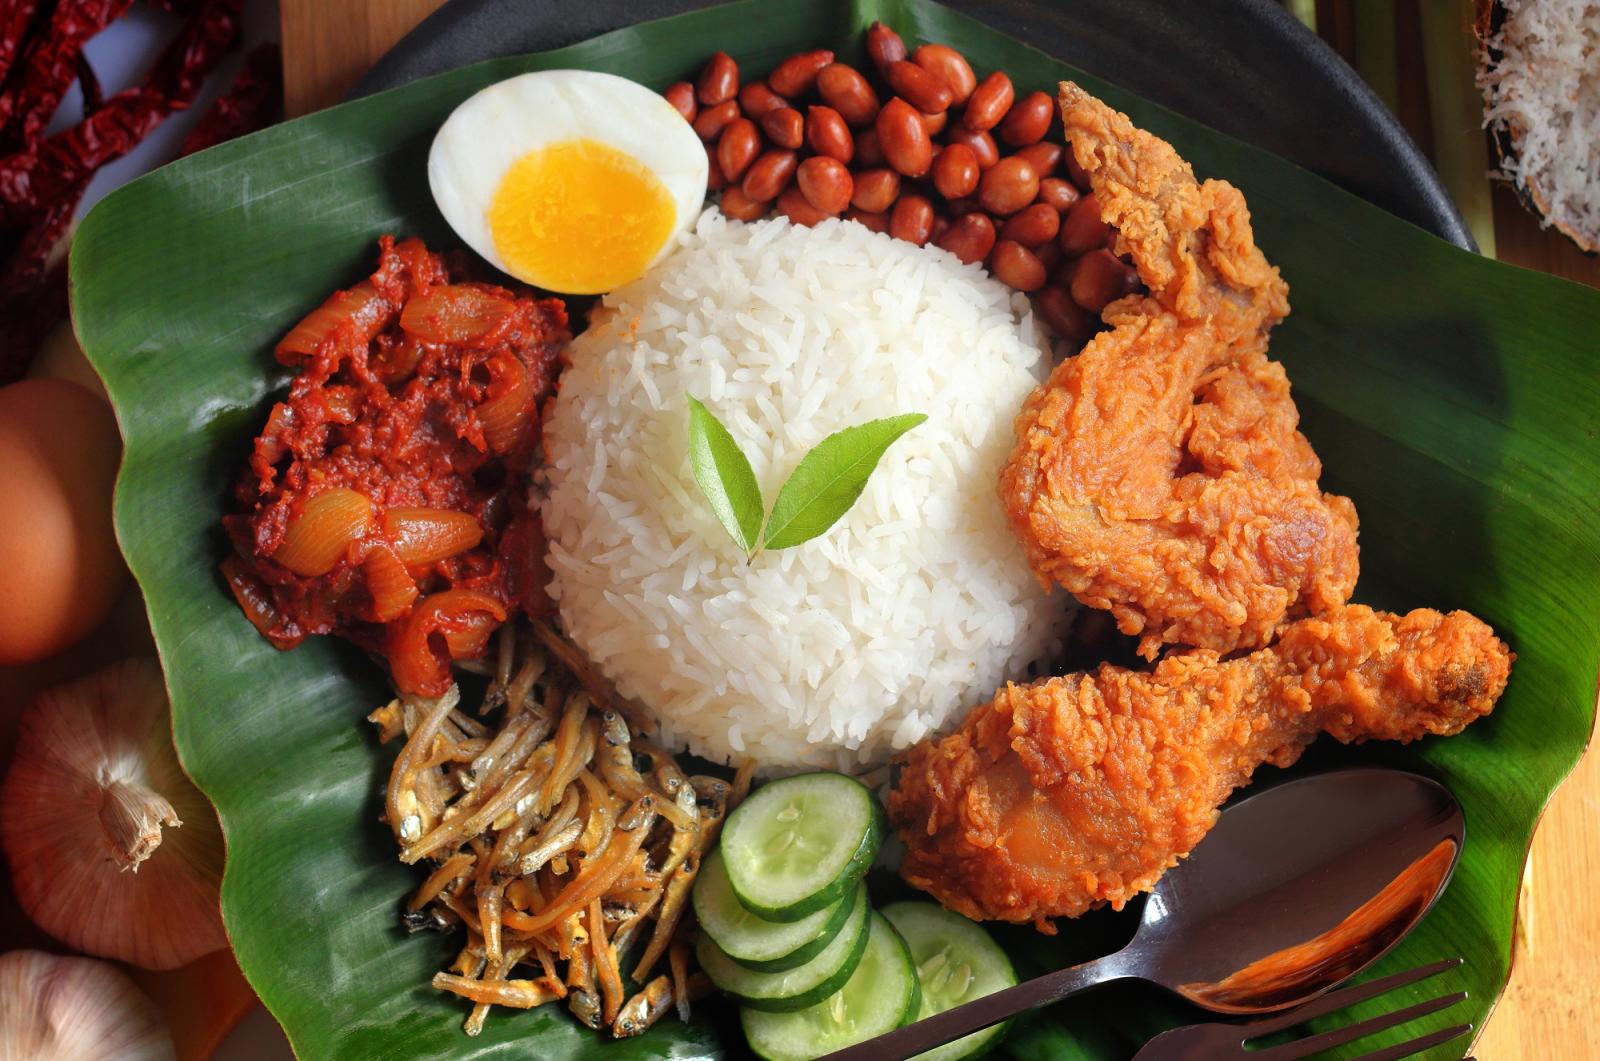 '싱가폴 현지 음식 10개' 어떤 음식들이 있을까? 싱가폴 맛집은 여기로!